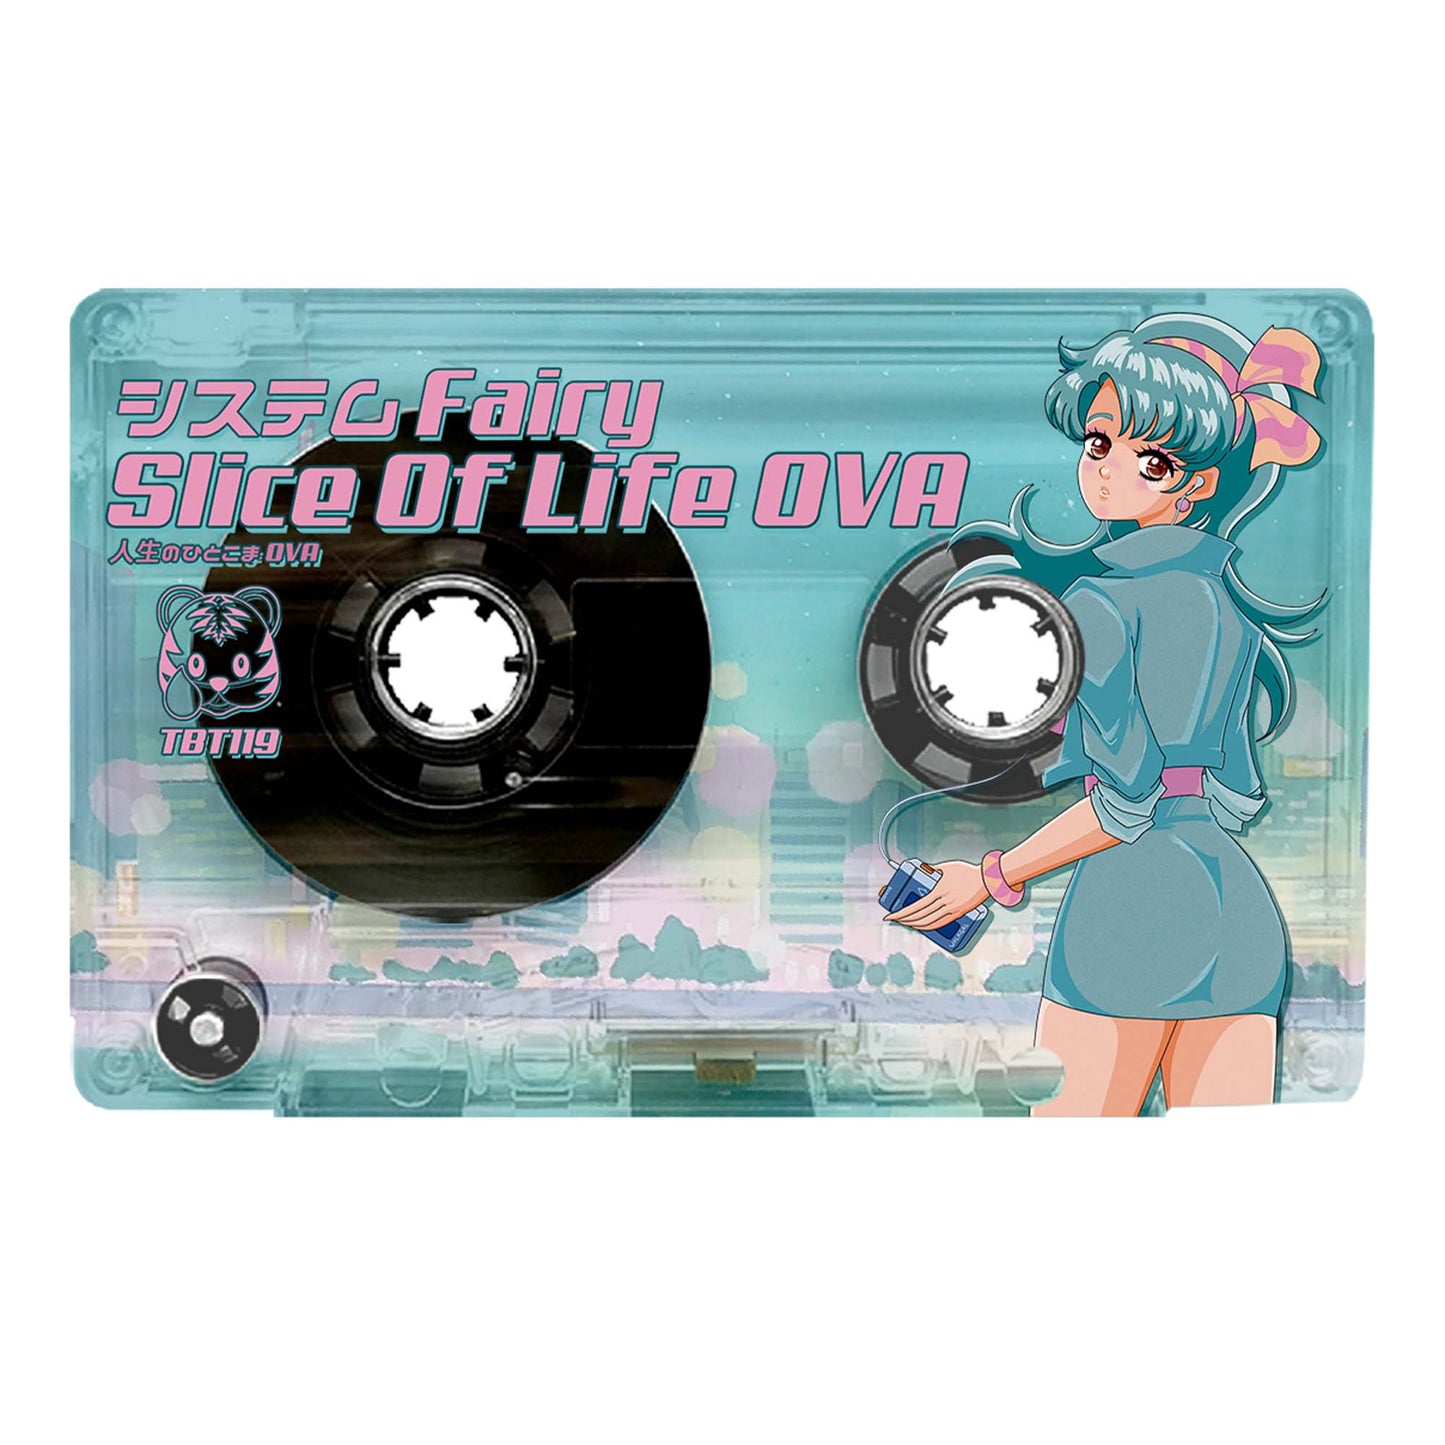 システム Fairy - "Slice Of Life OVA" Limited Edition Cassette Tape